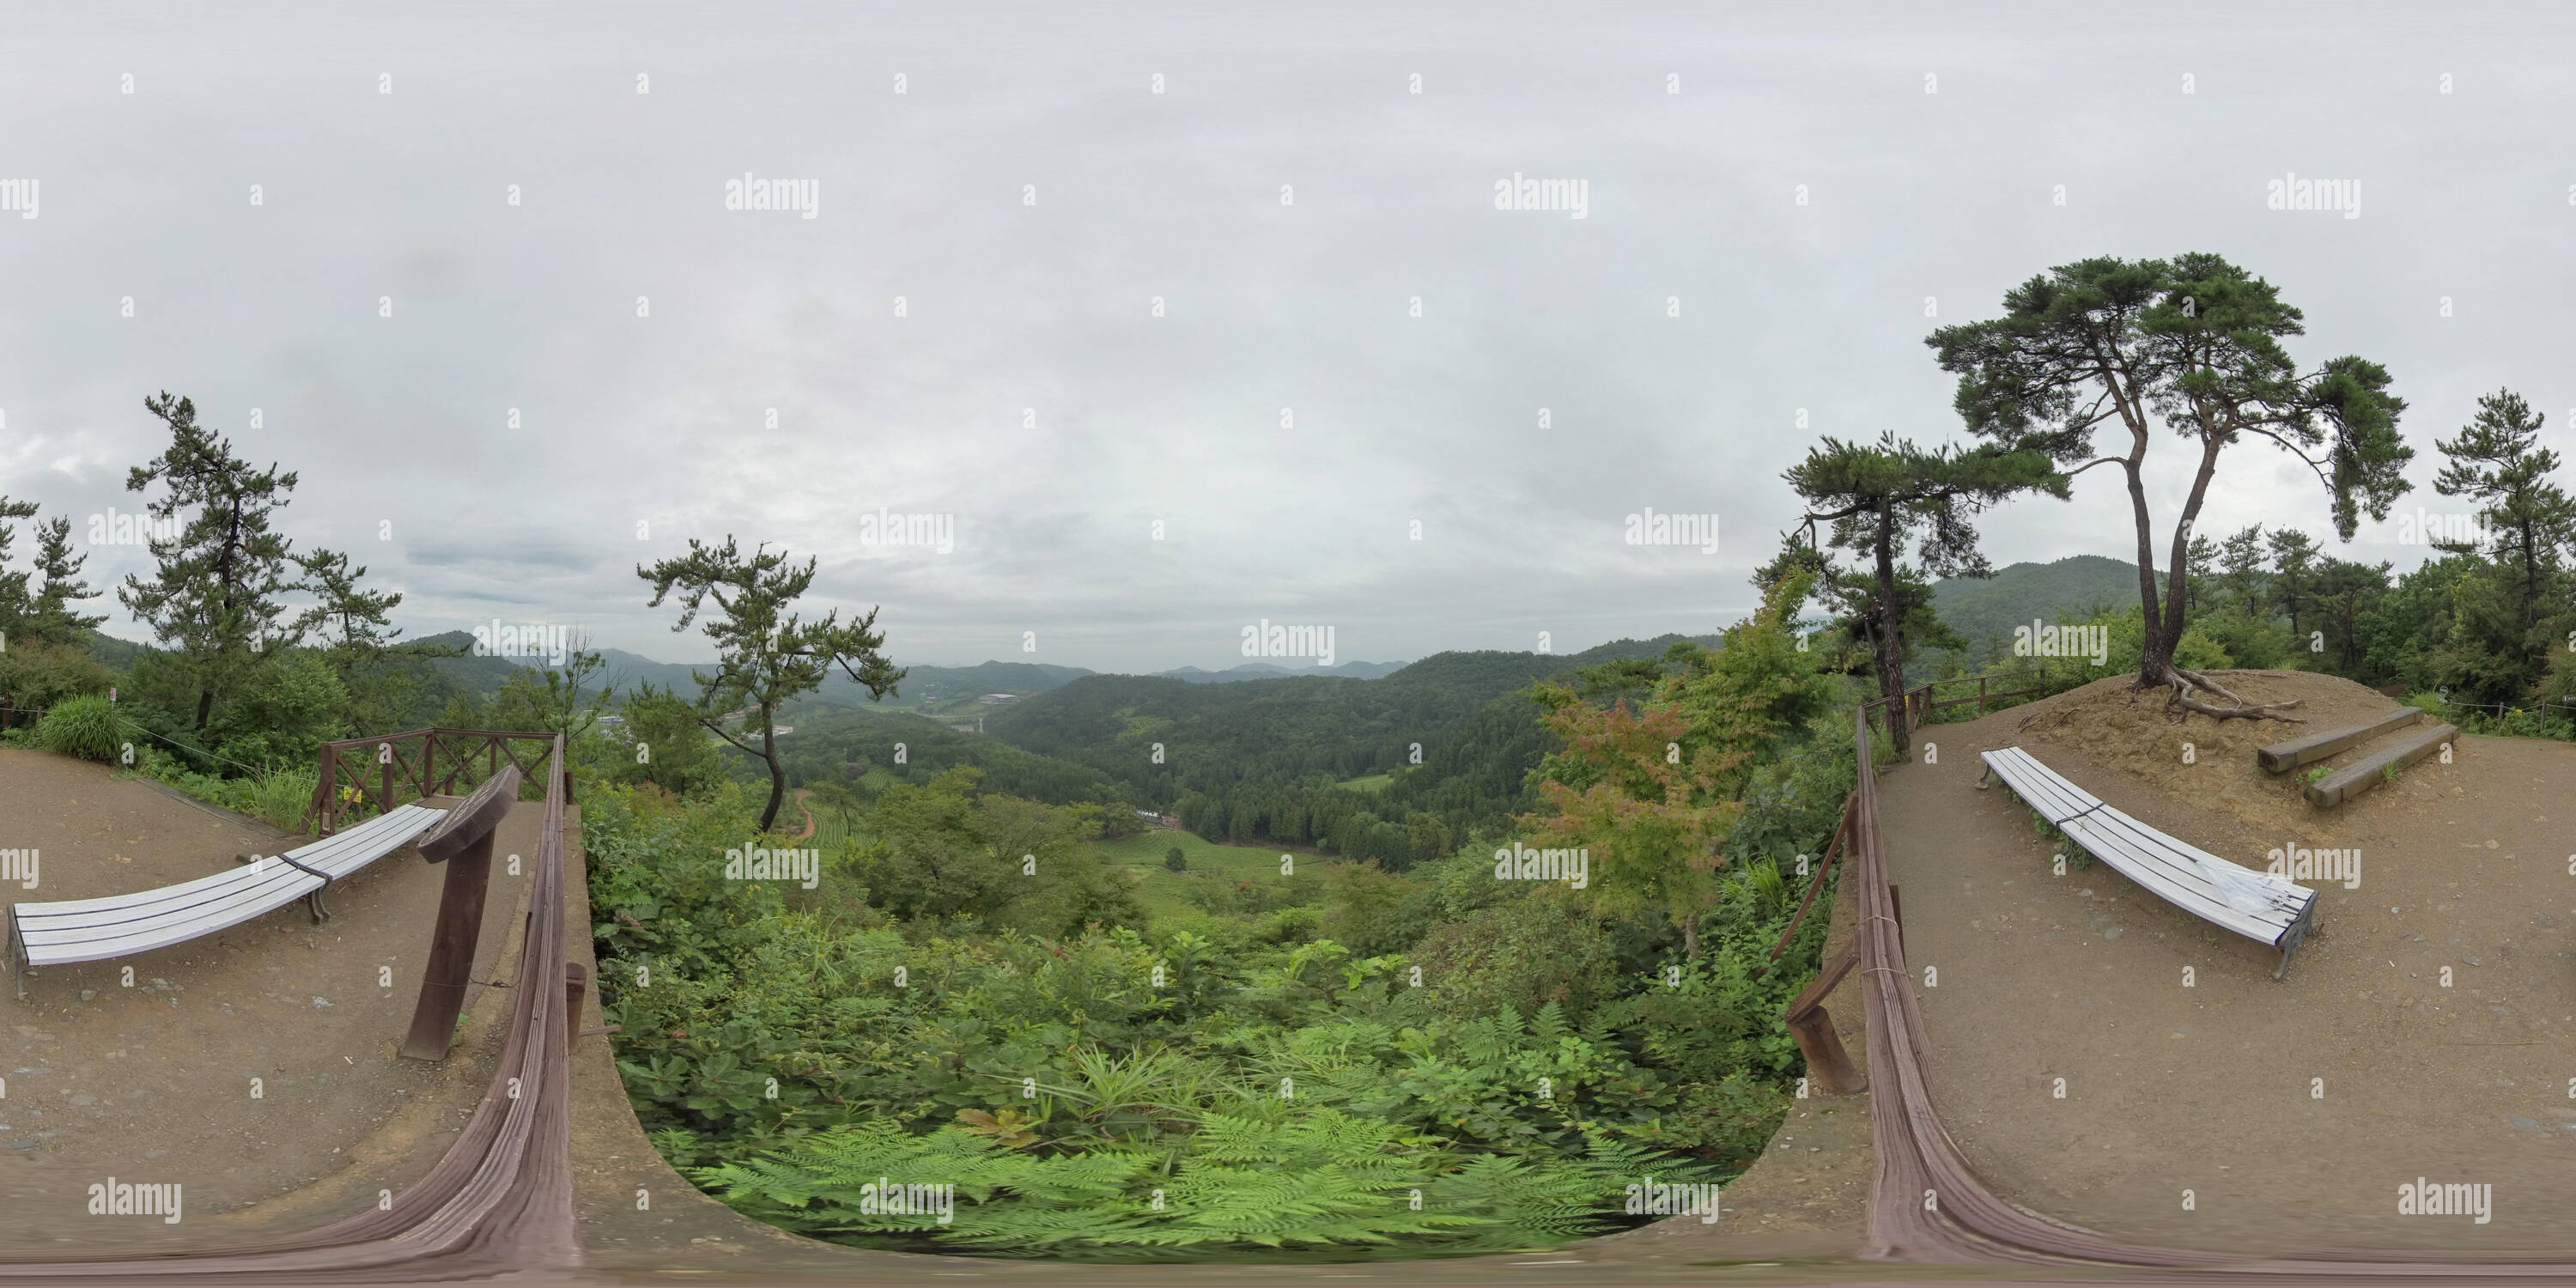 Visualizzazione panoramica a 360 gradi di Boseong, la Corea del sud ? 18 luglio 2019 Daehandawon. 360 gradi panorama sferica di Daehandawon.